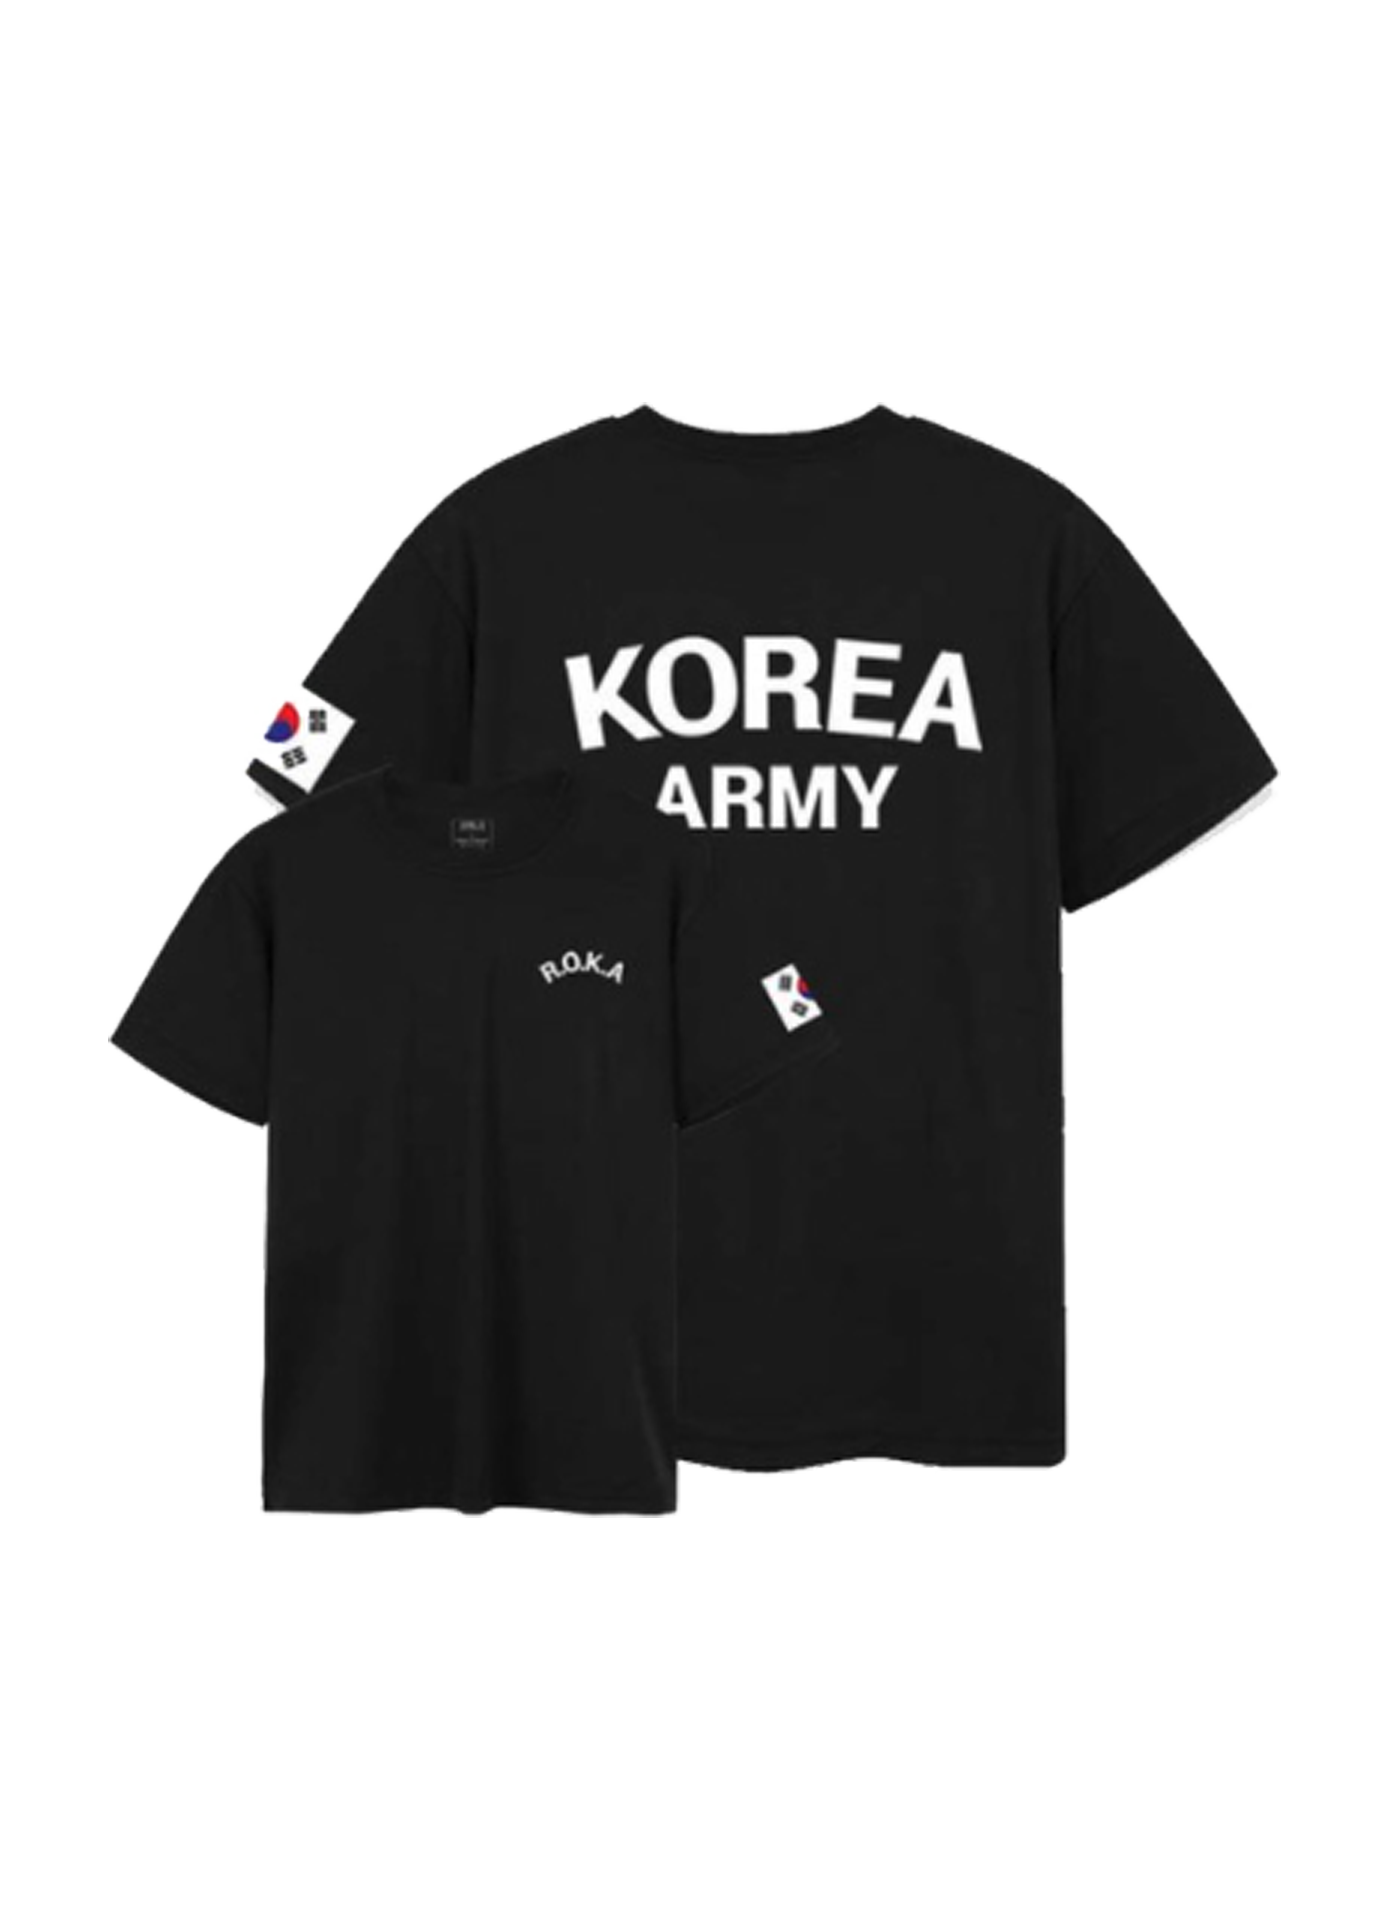 Schrijf een brief openbaar overstroming ROKA T-Shirt (Korean Army) - NAKD SEOUL